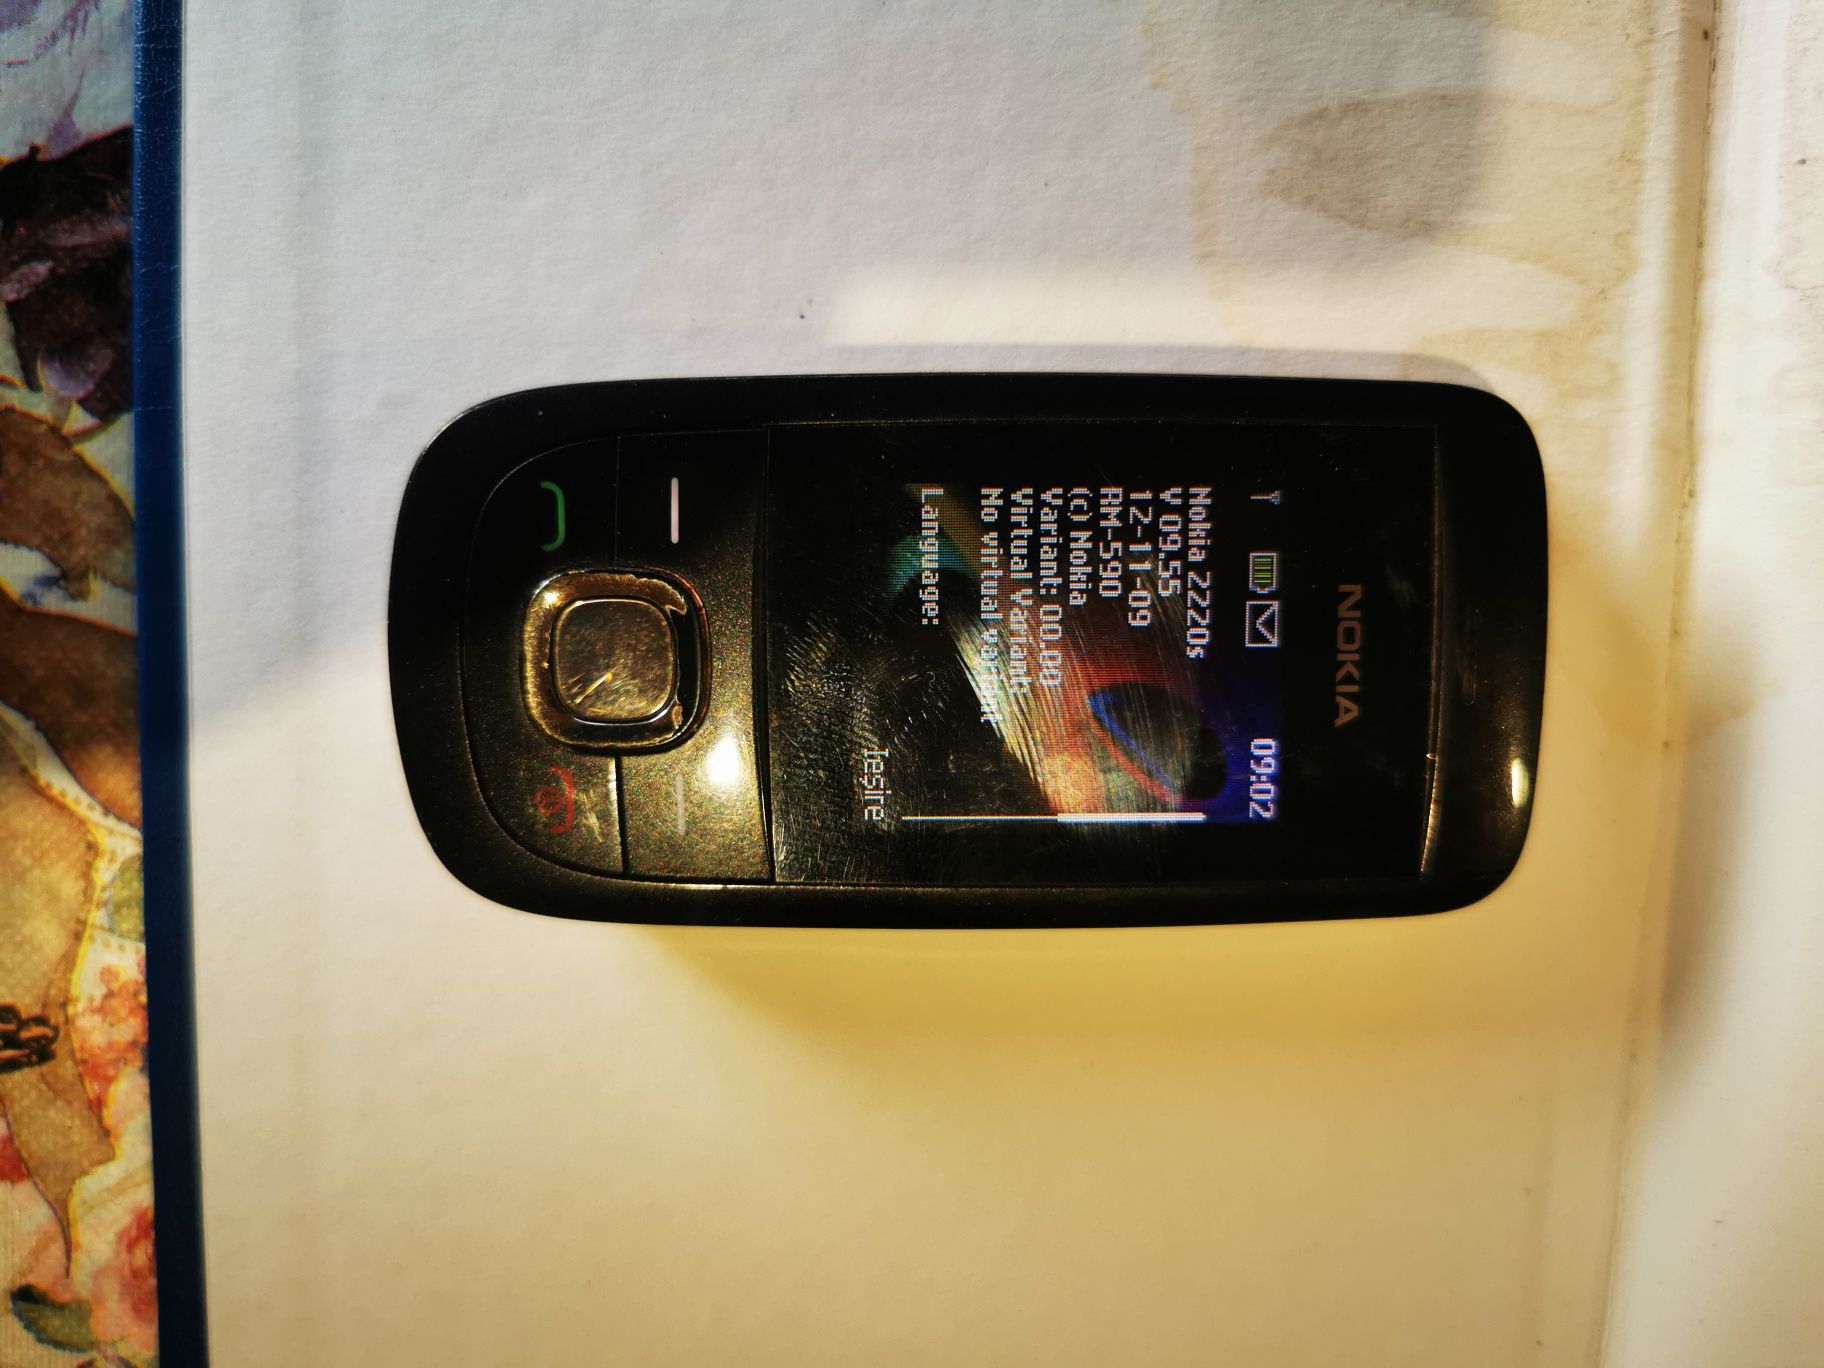 Nokia 2220s, V 09.55